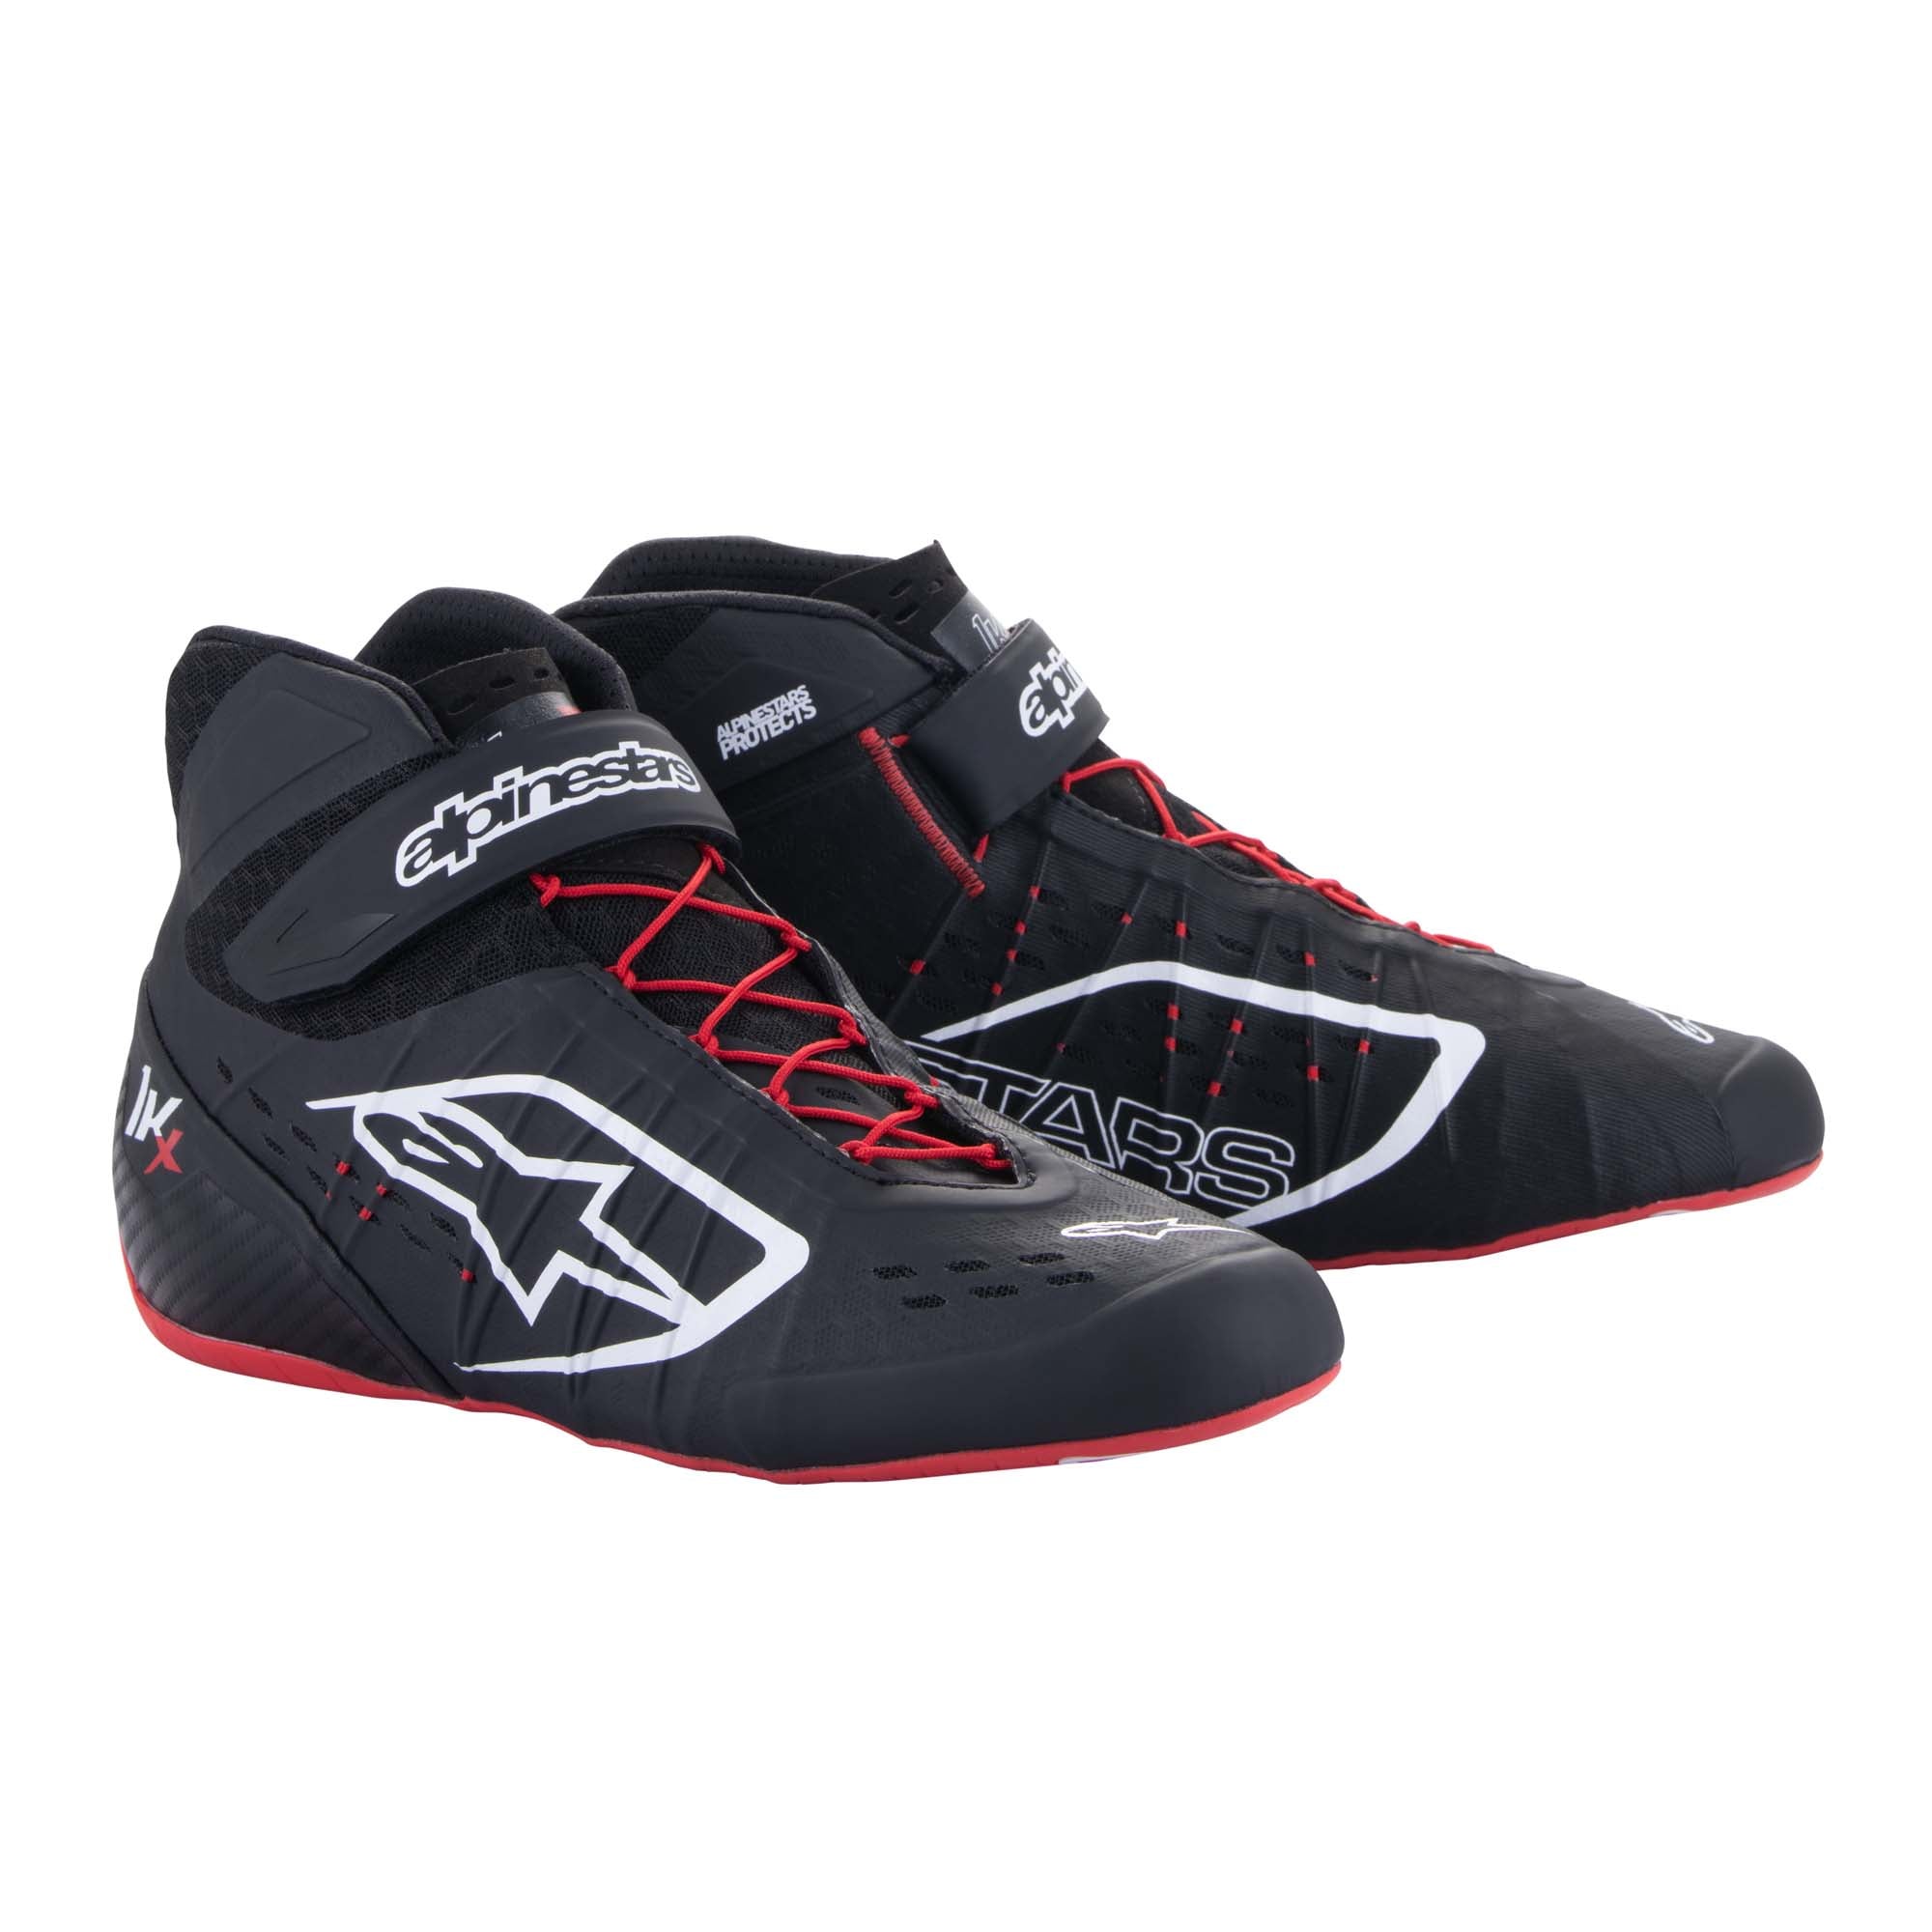 Alpinestars Tech 1-KX v2 Karting Shoes - Youth Sizes